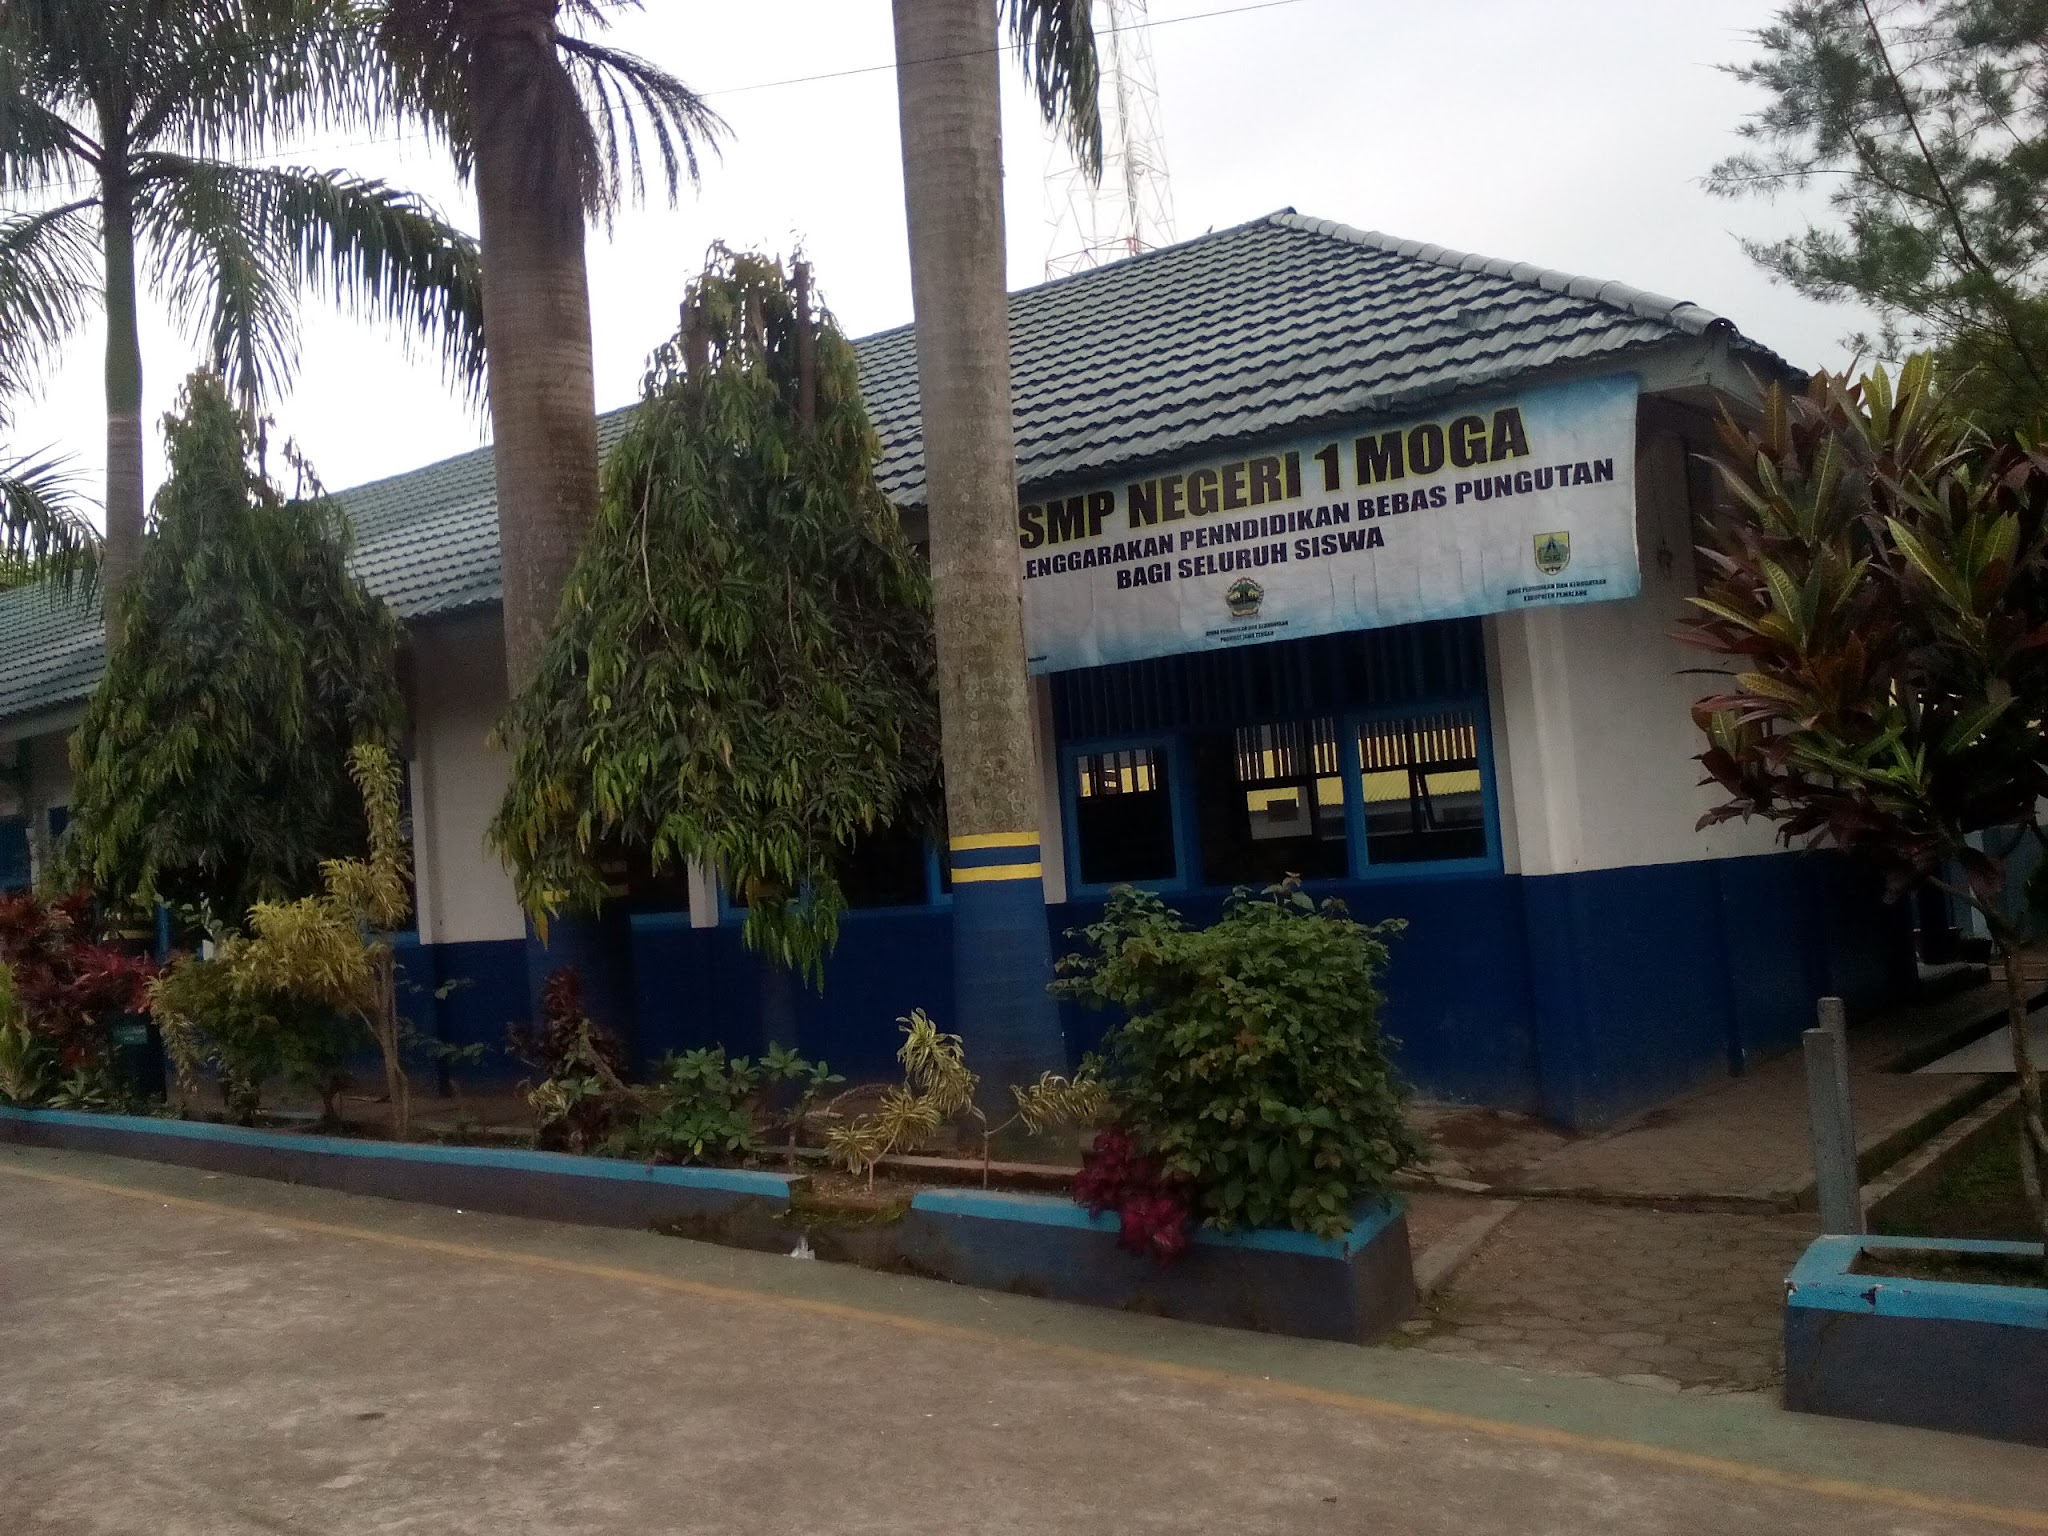 Foto SMP  Negeri 1 Moga, Kab. Pemalang